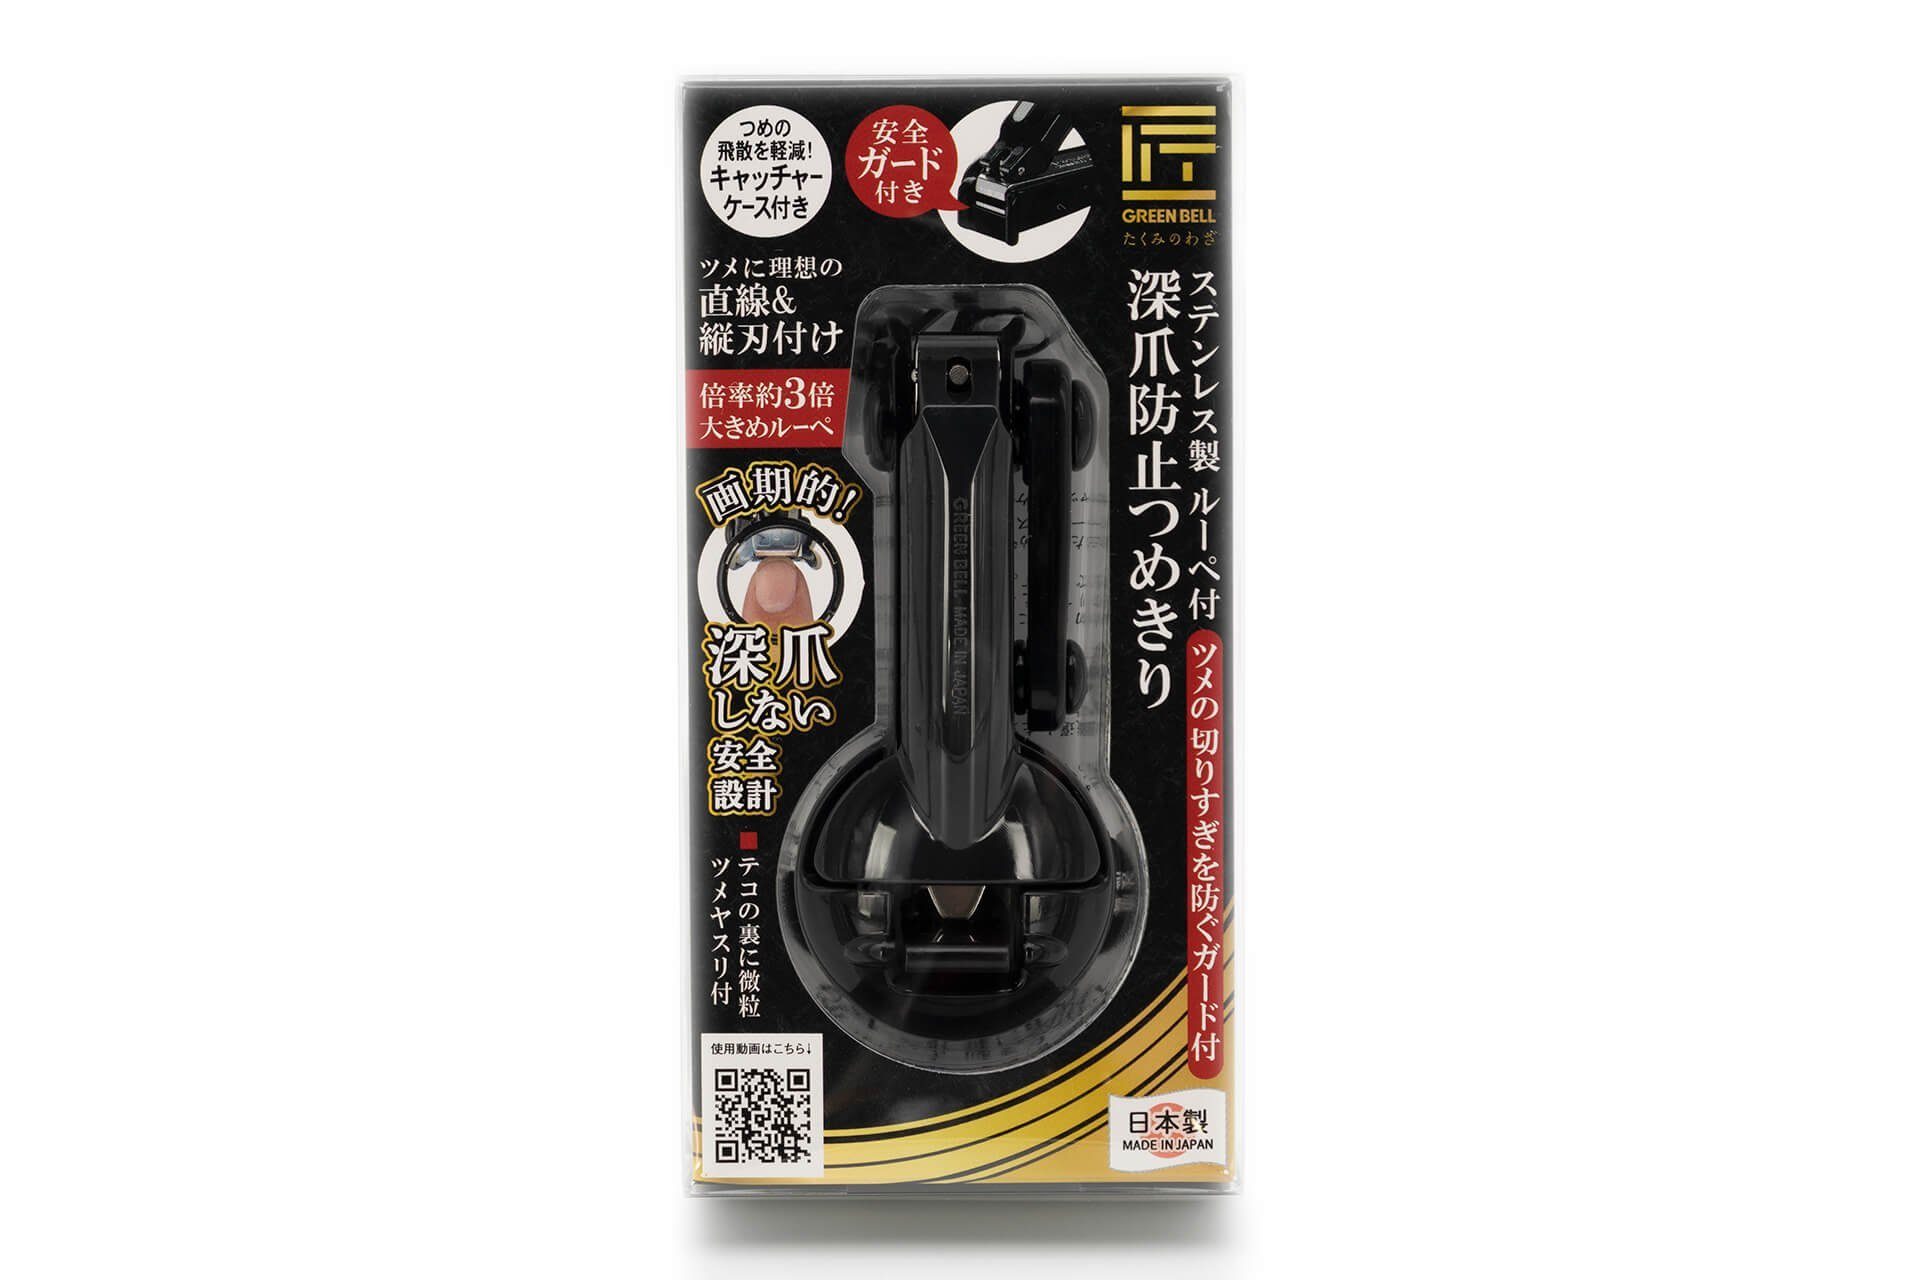 Seki Nagelknipser Qualitätsprodukt Sicherheits Lupe Nagelknipser cm, 9.3x2.4x1.5 G-1309 aus Japan mit handgeschärftes EDGE